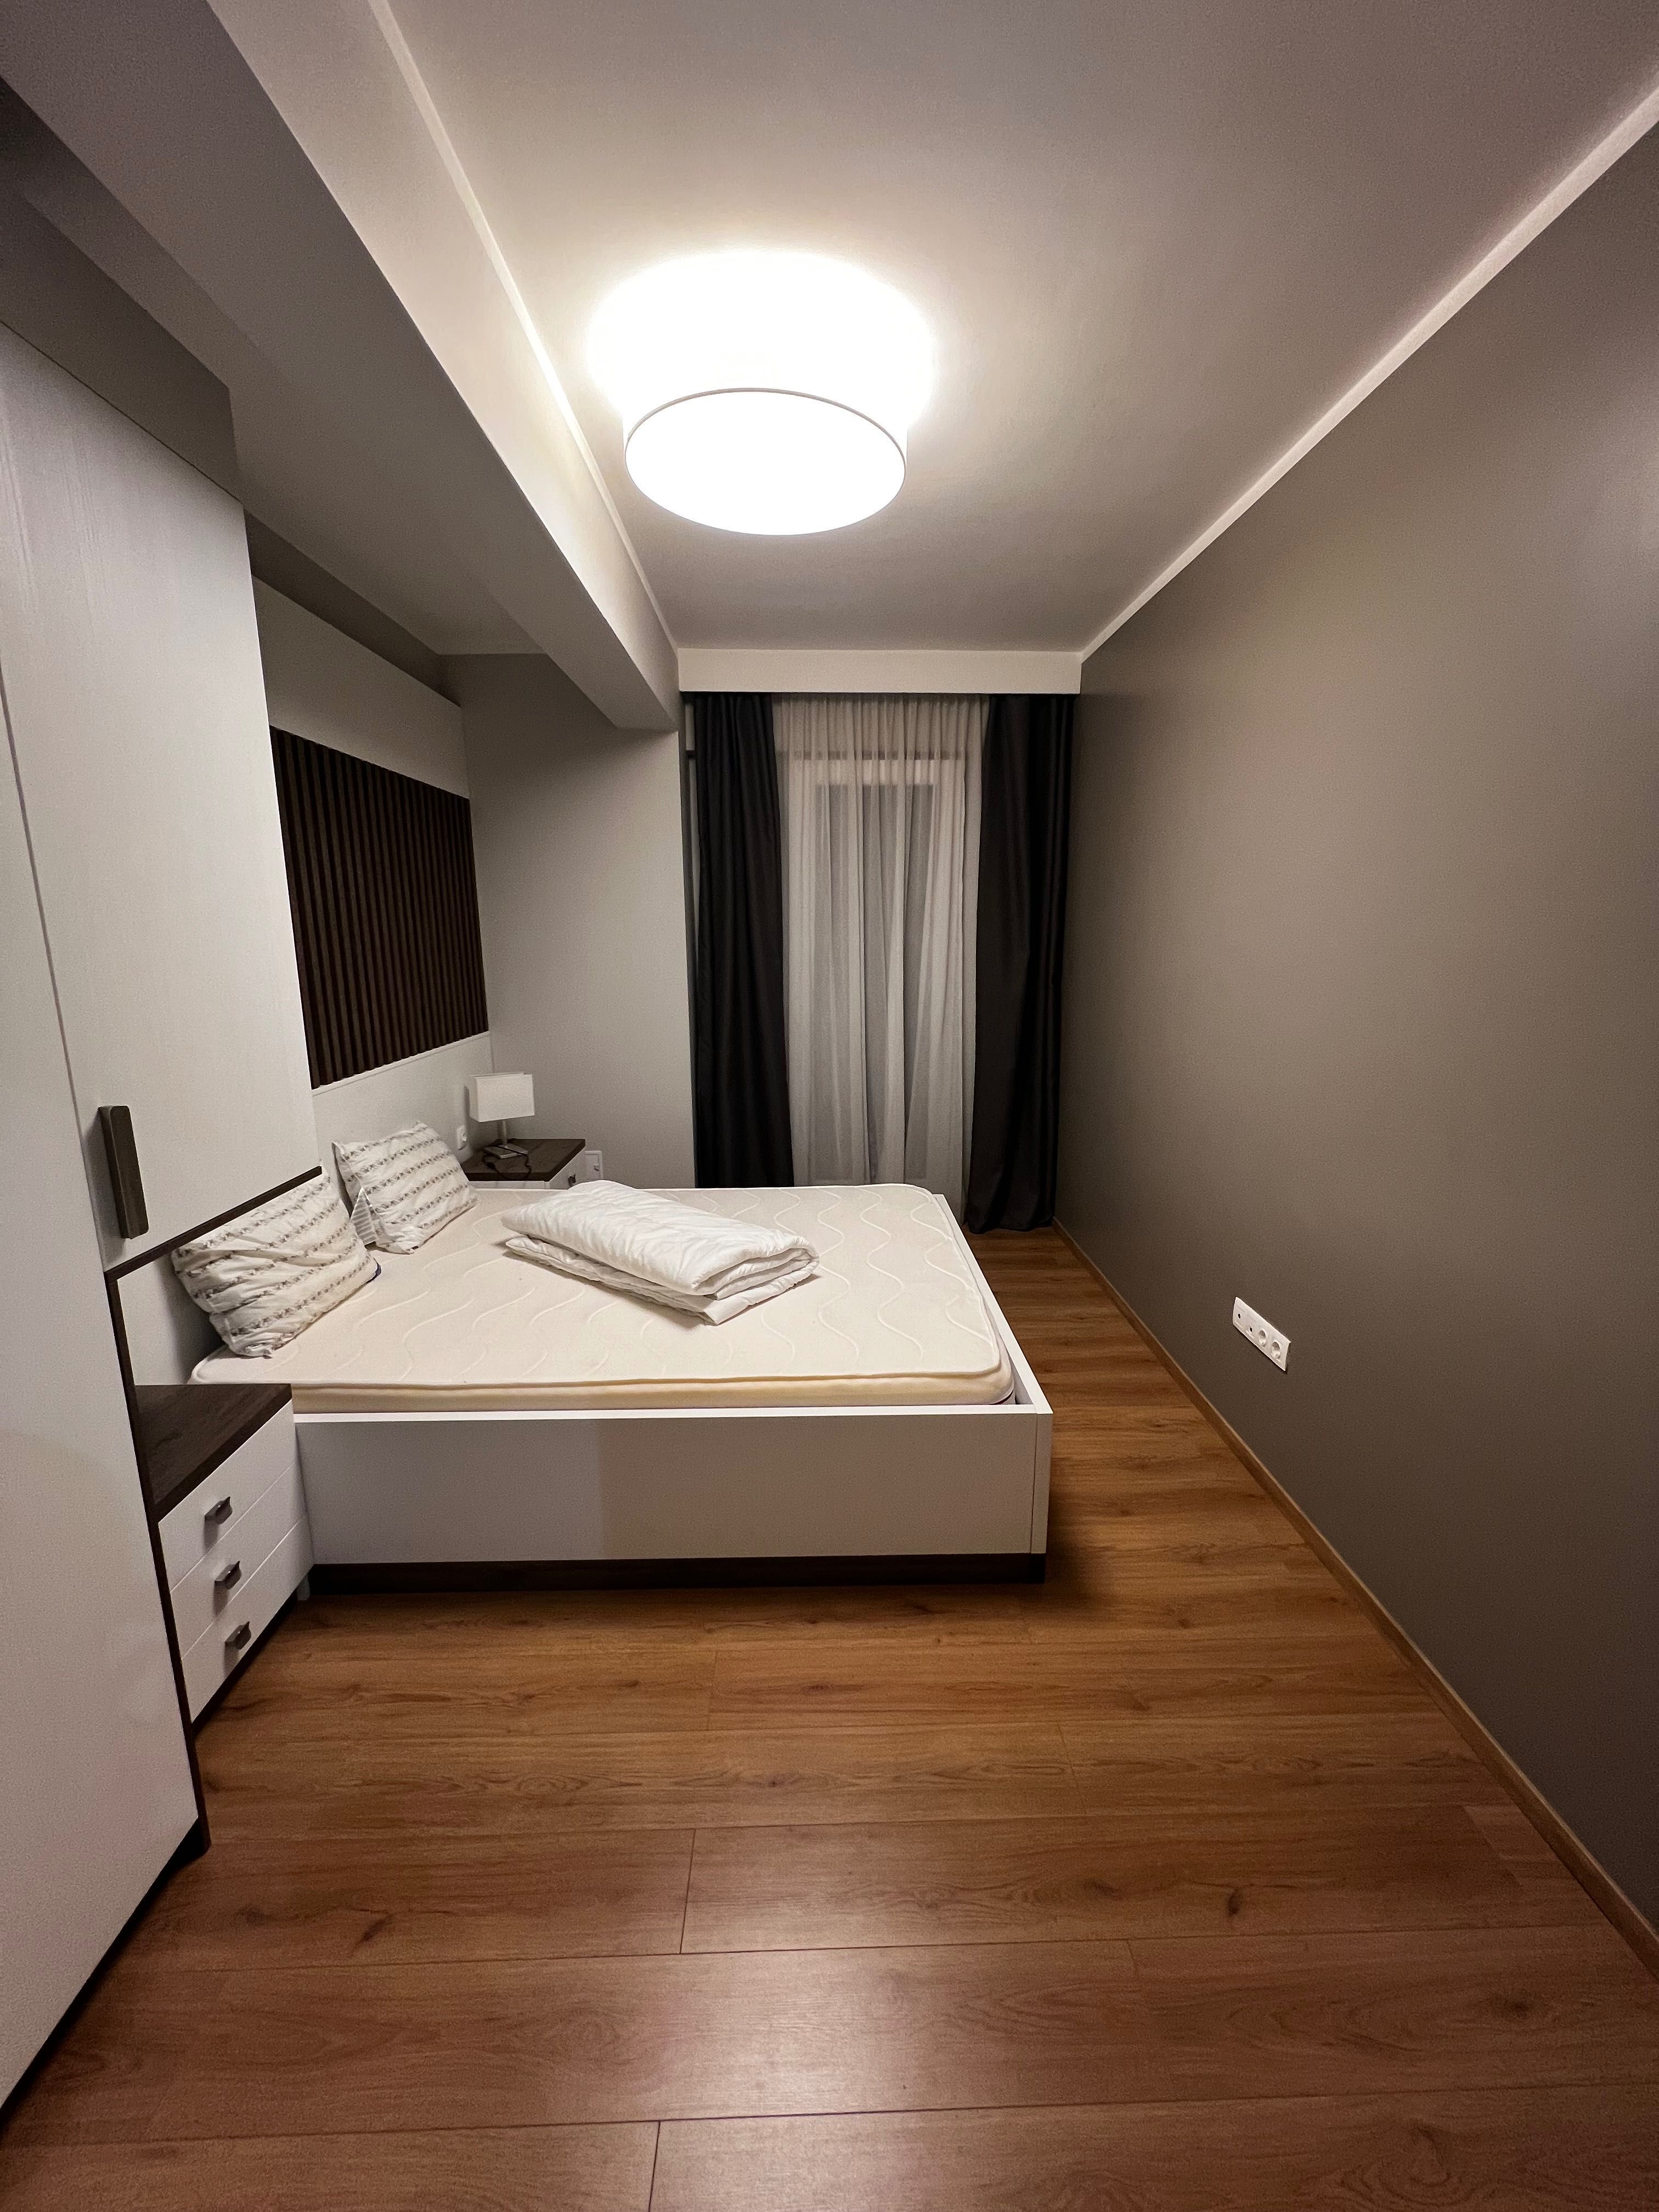 Apartament 3 camere Str. Arany Janos Bloc nou 87 mp utili-50 mp terasa